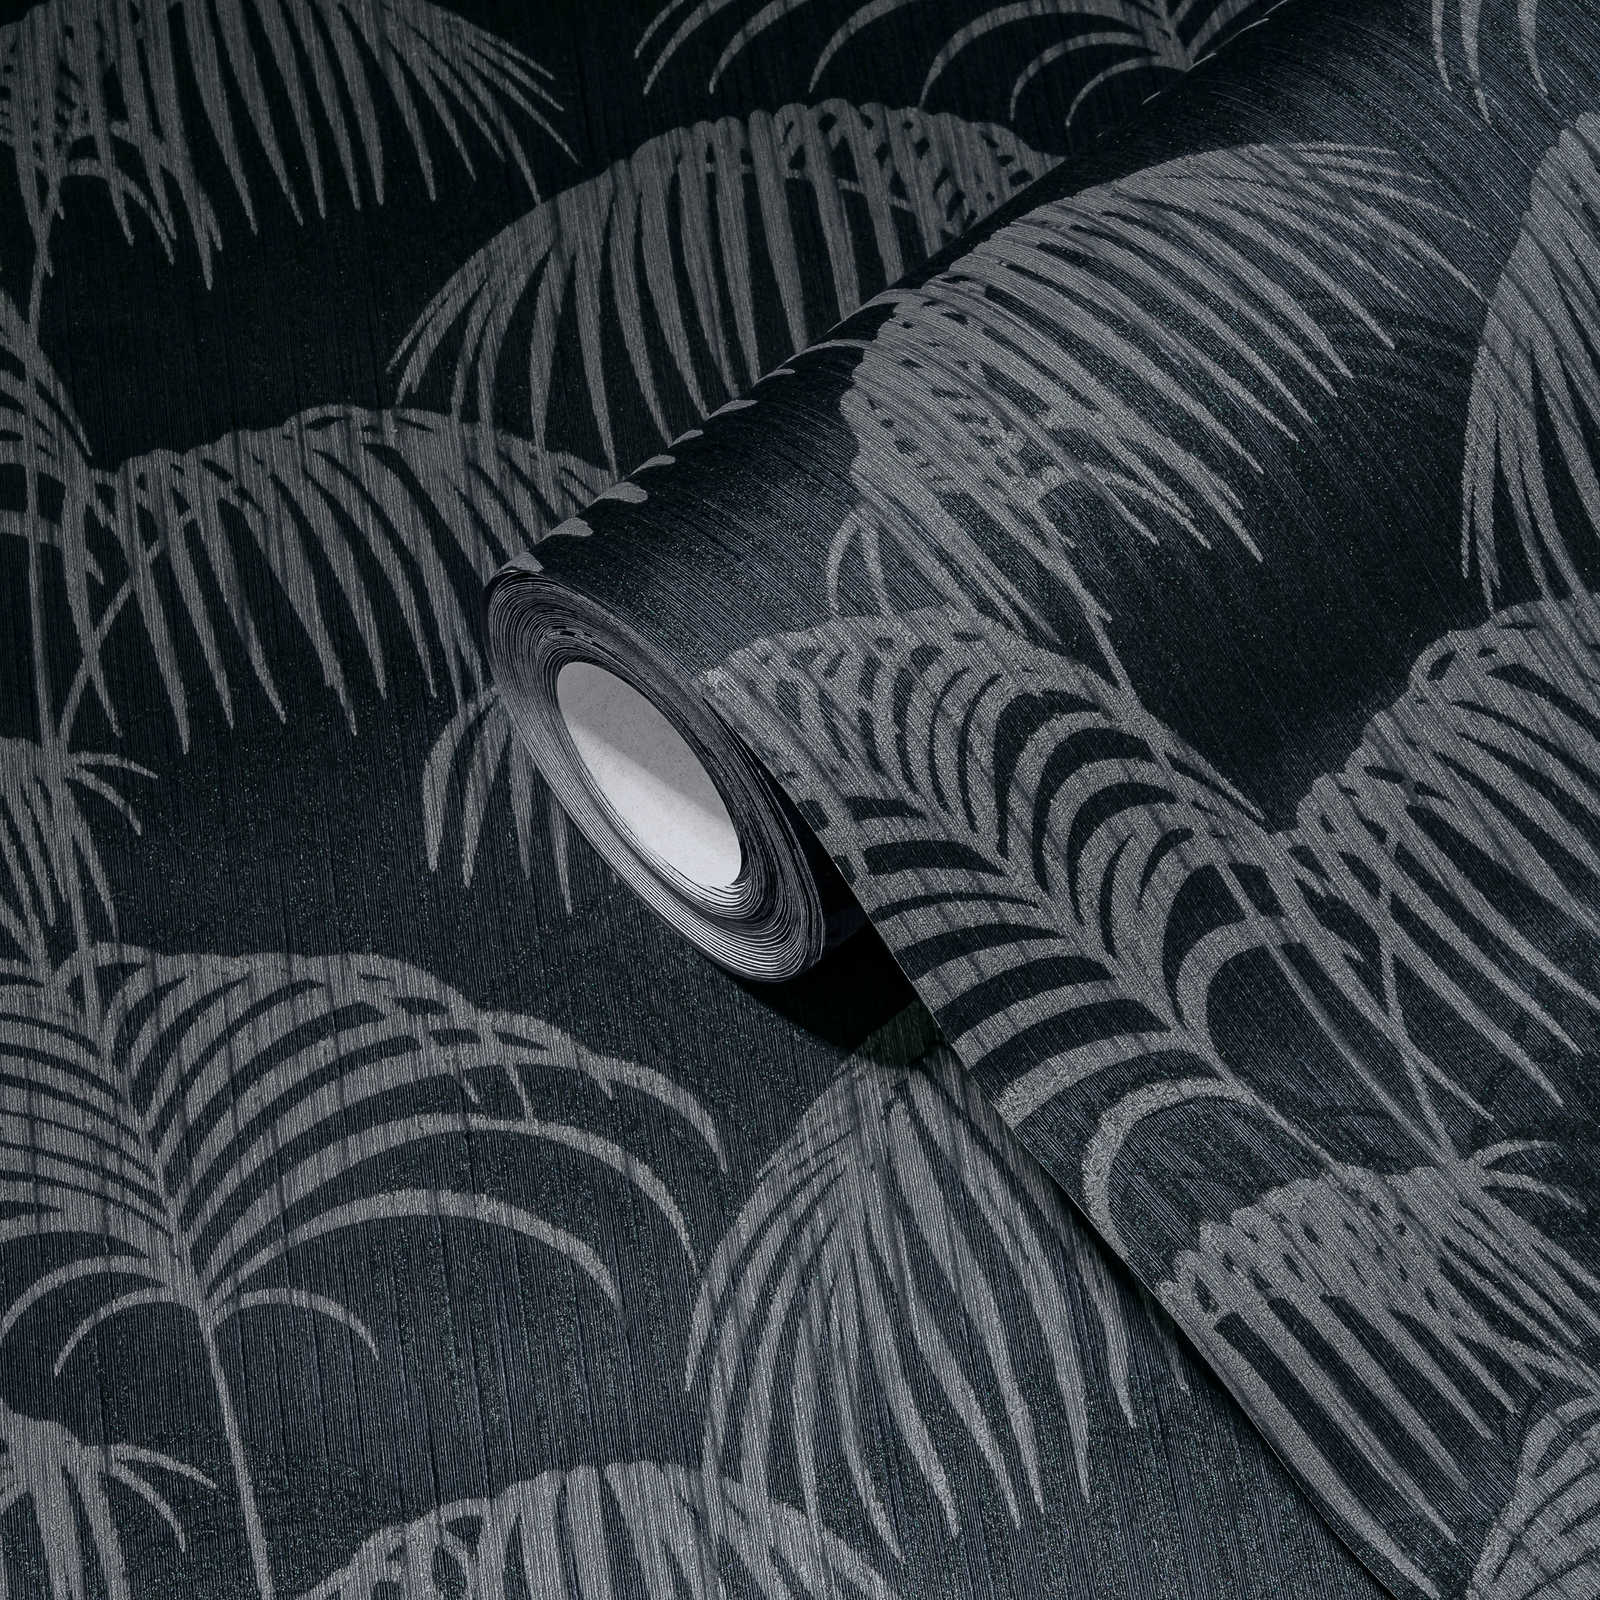             Papel pintado Hojas de palmera con efecto de profundidad - gris, negro
        